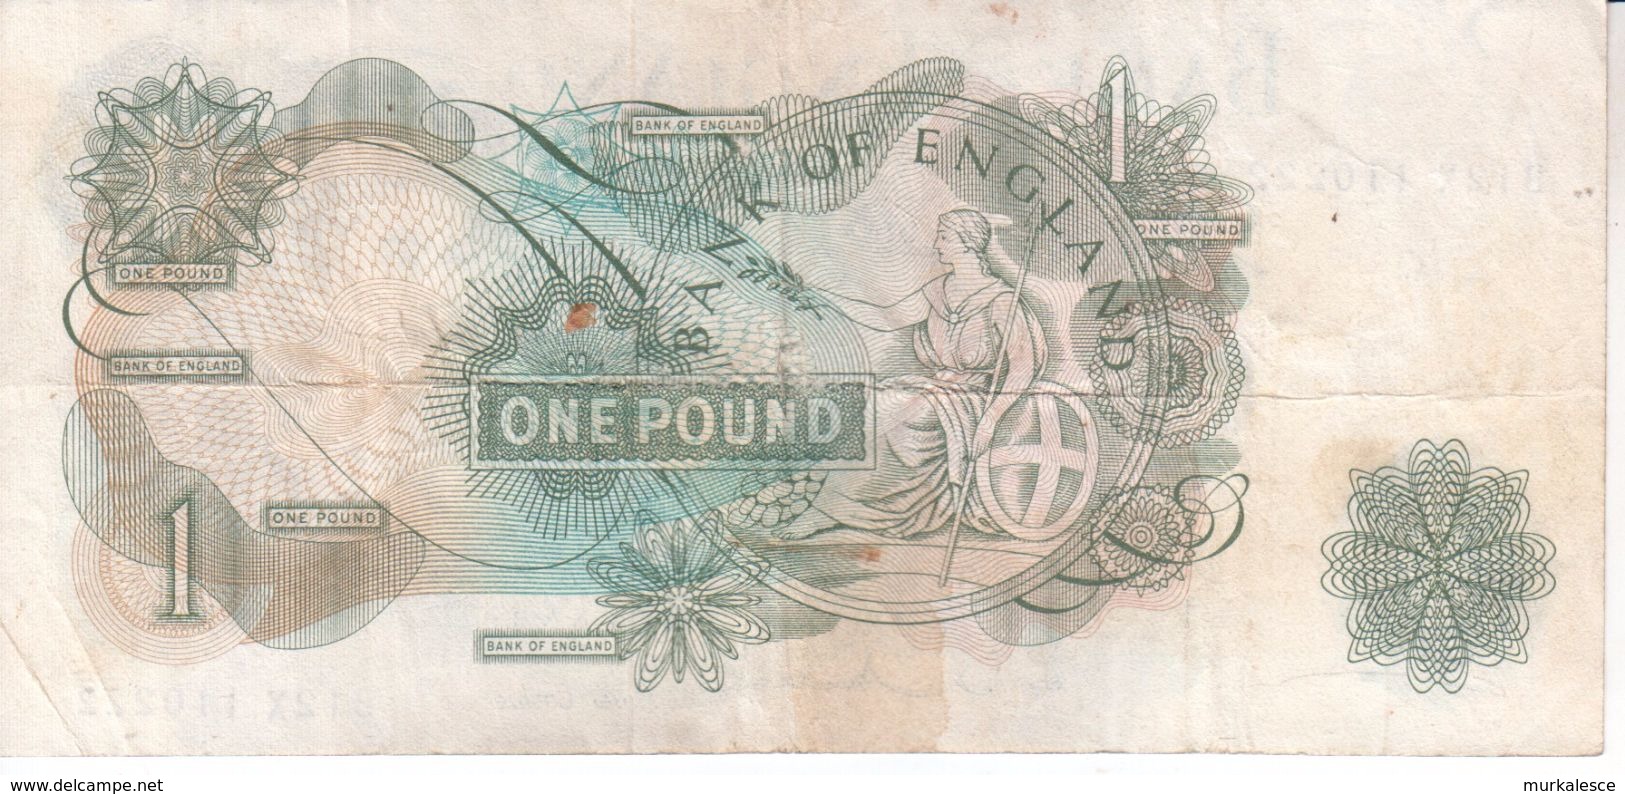 Bank Of England Einen Pound   Banknote In Gebrauchtem  BL2X - 1 Pound